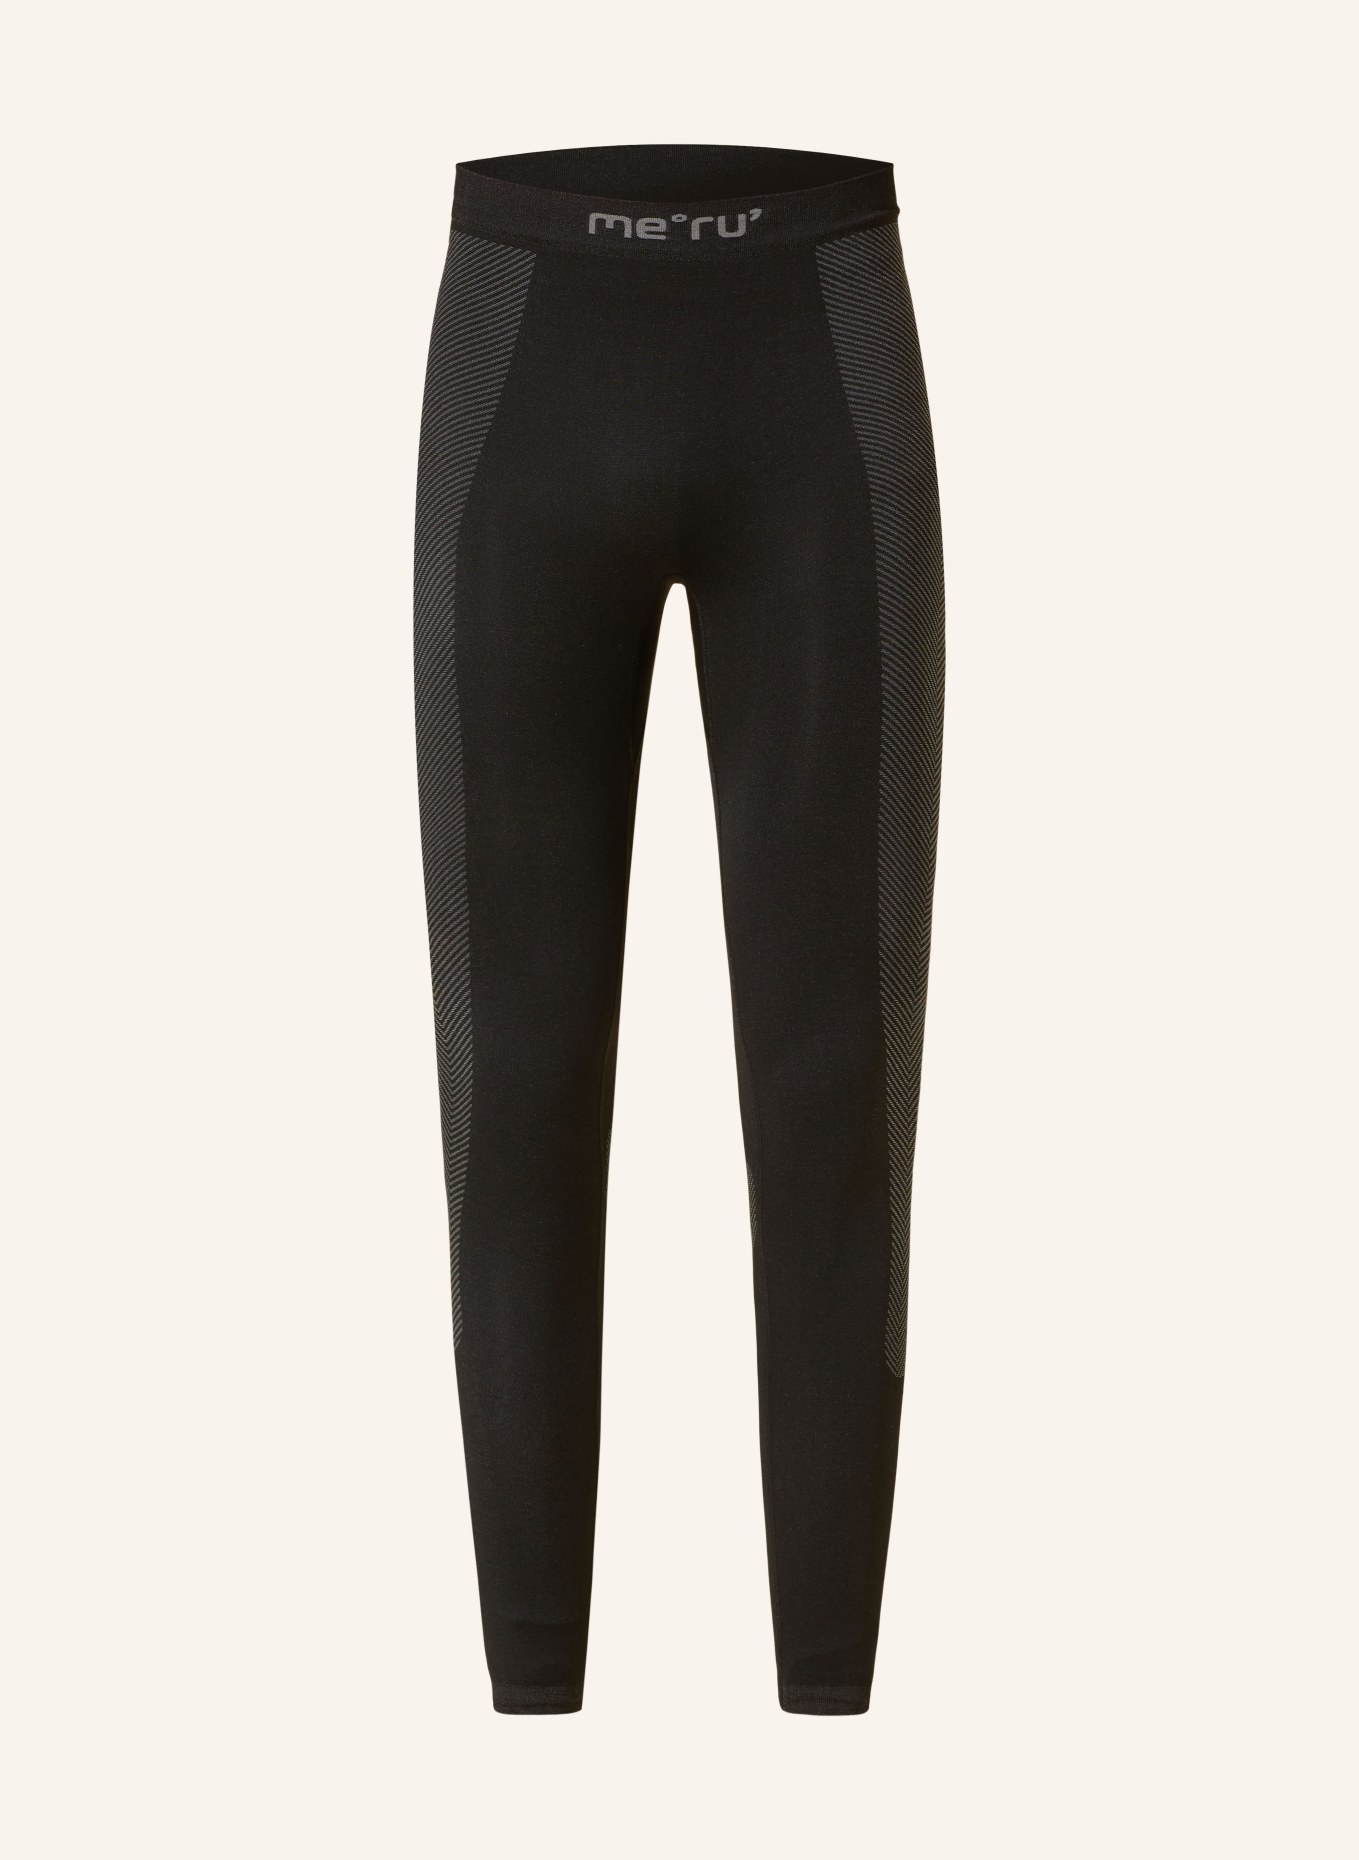 me°ru' Functional underwear trousers ANVIK, Color: GRAY/ BLACK (Image 1)